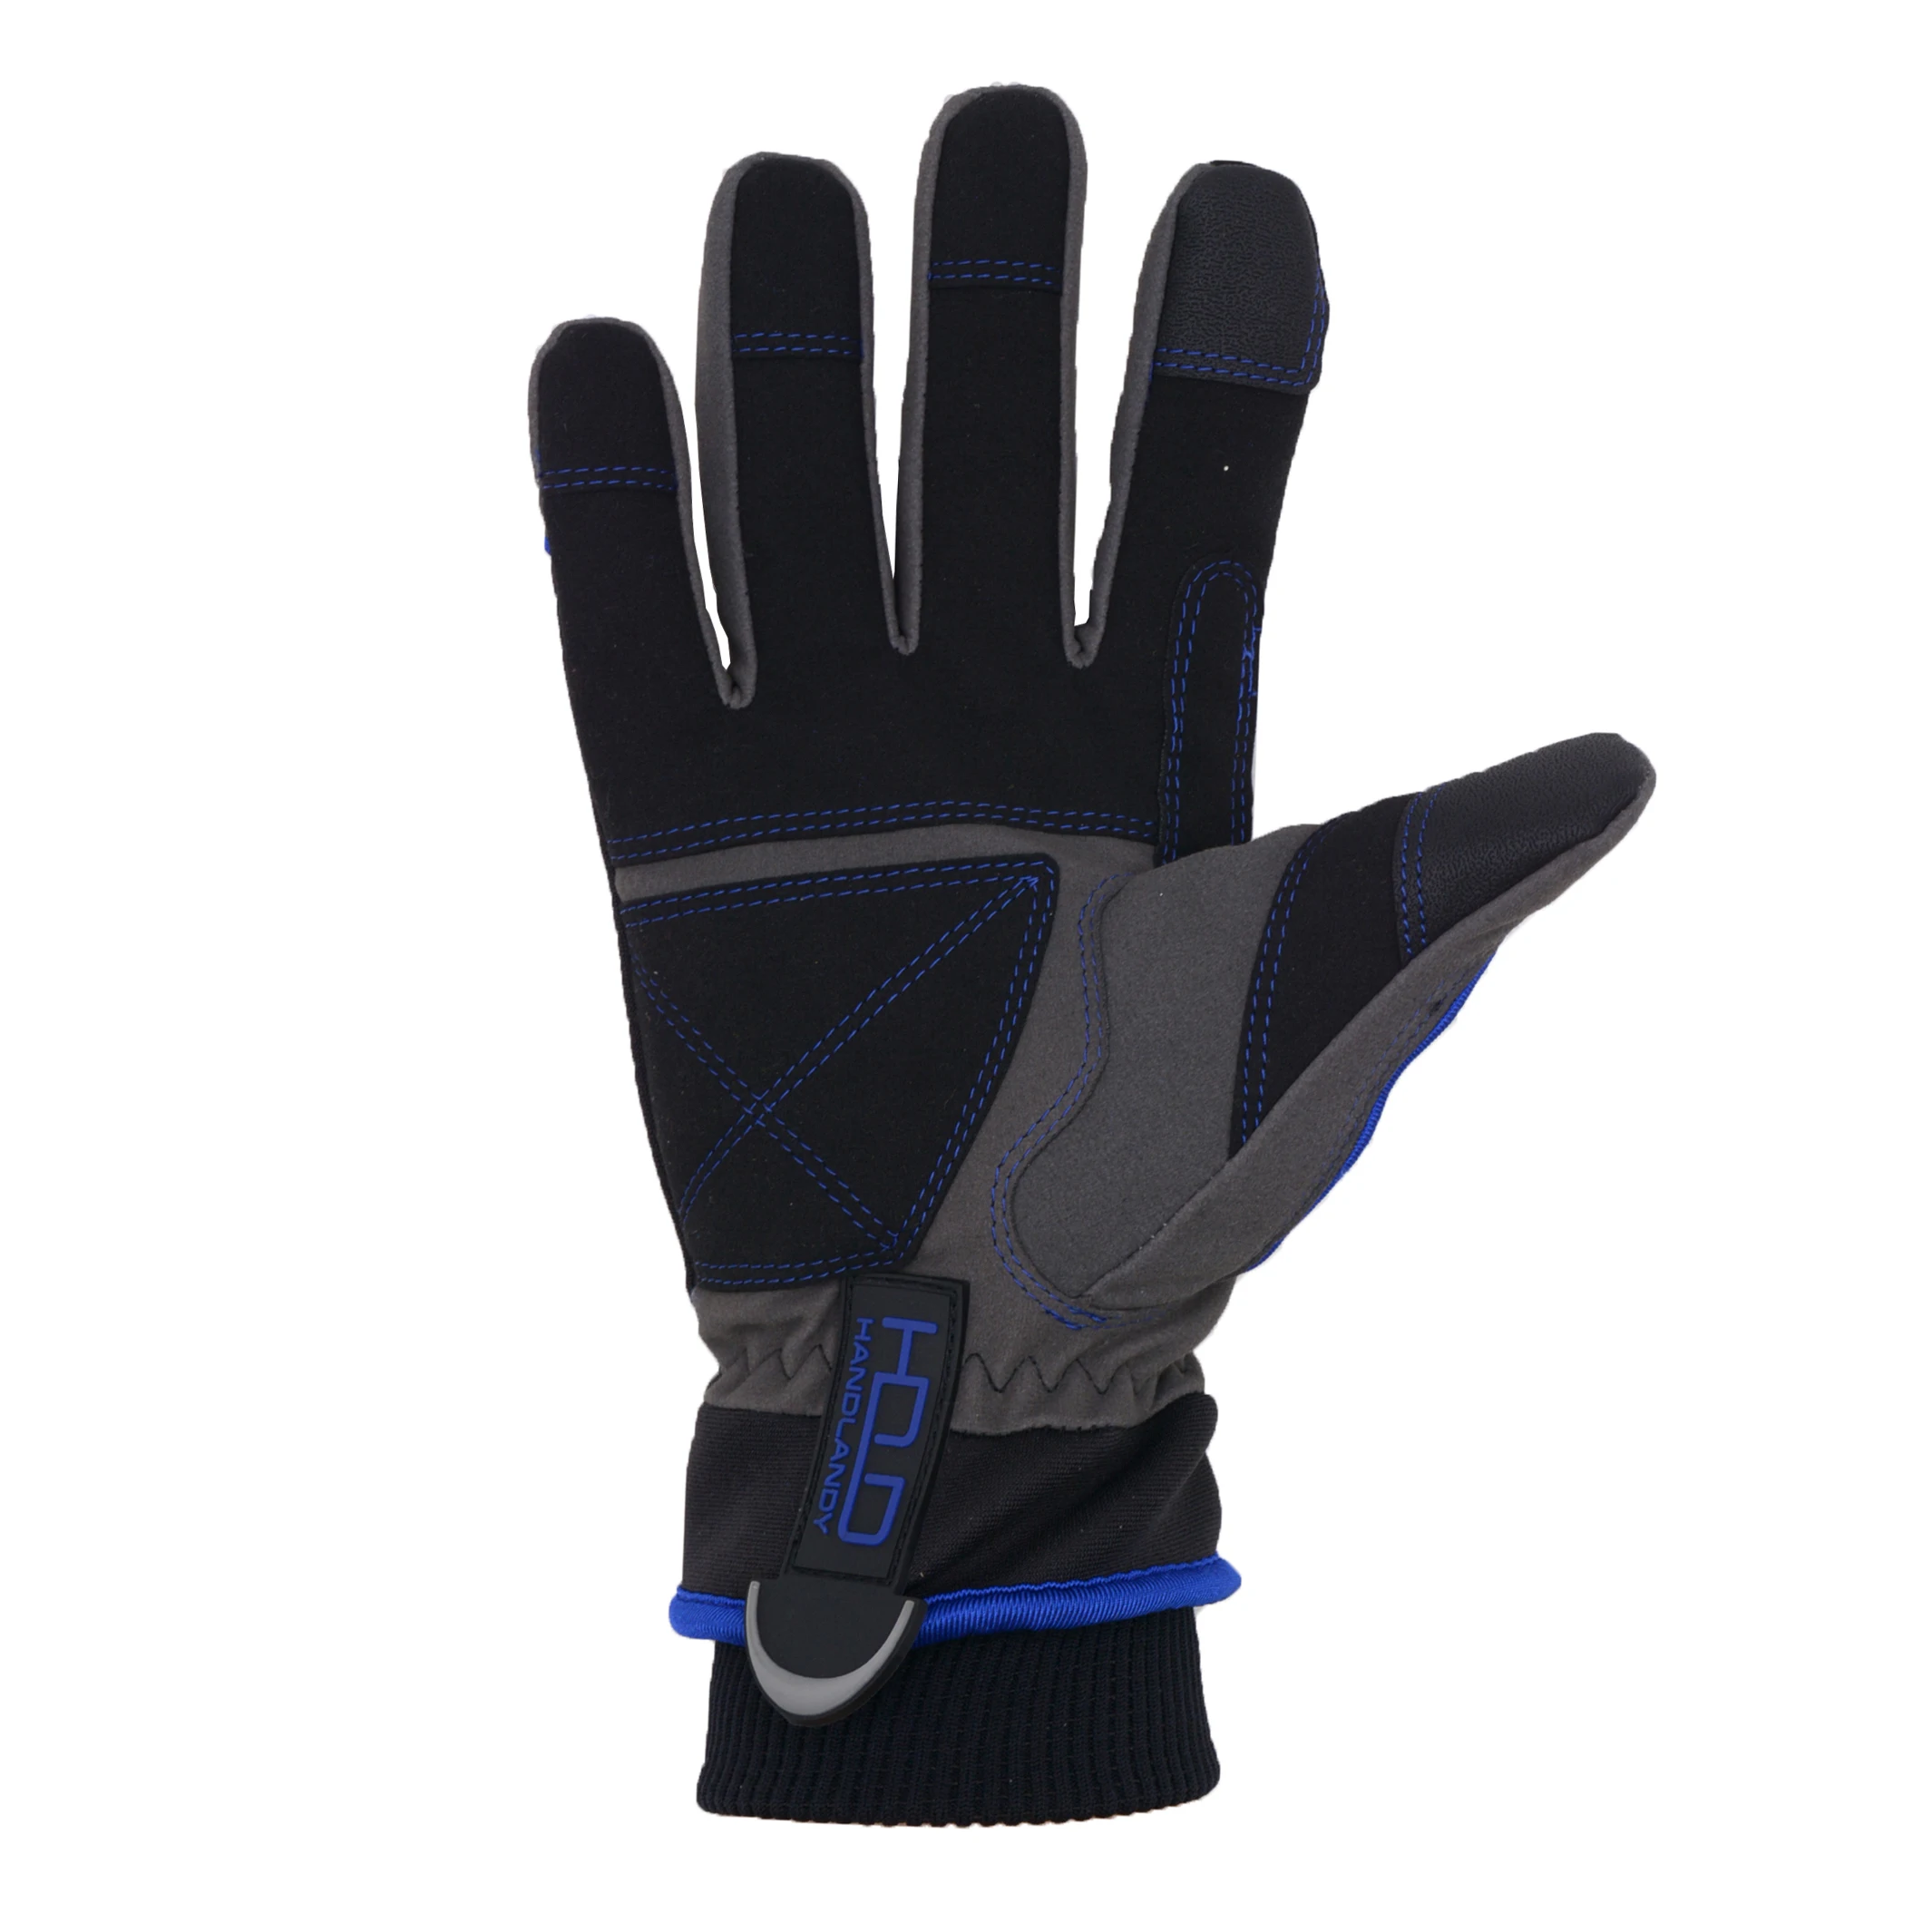 Синие водонепроницаемые теплые зимние перчатки HANDLANDY с сенсорным экраном для мужчин и женщин, для холодной погоды, сноуборда, работы, лыж